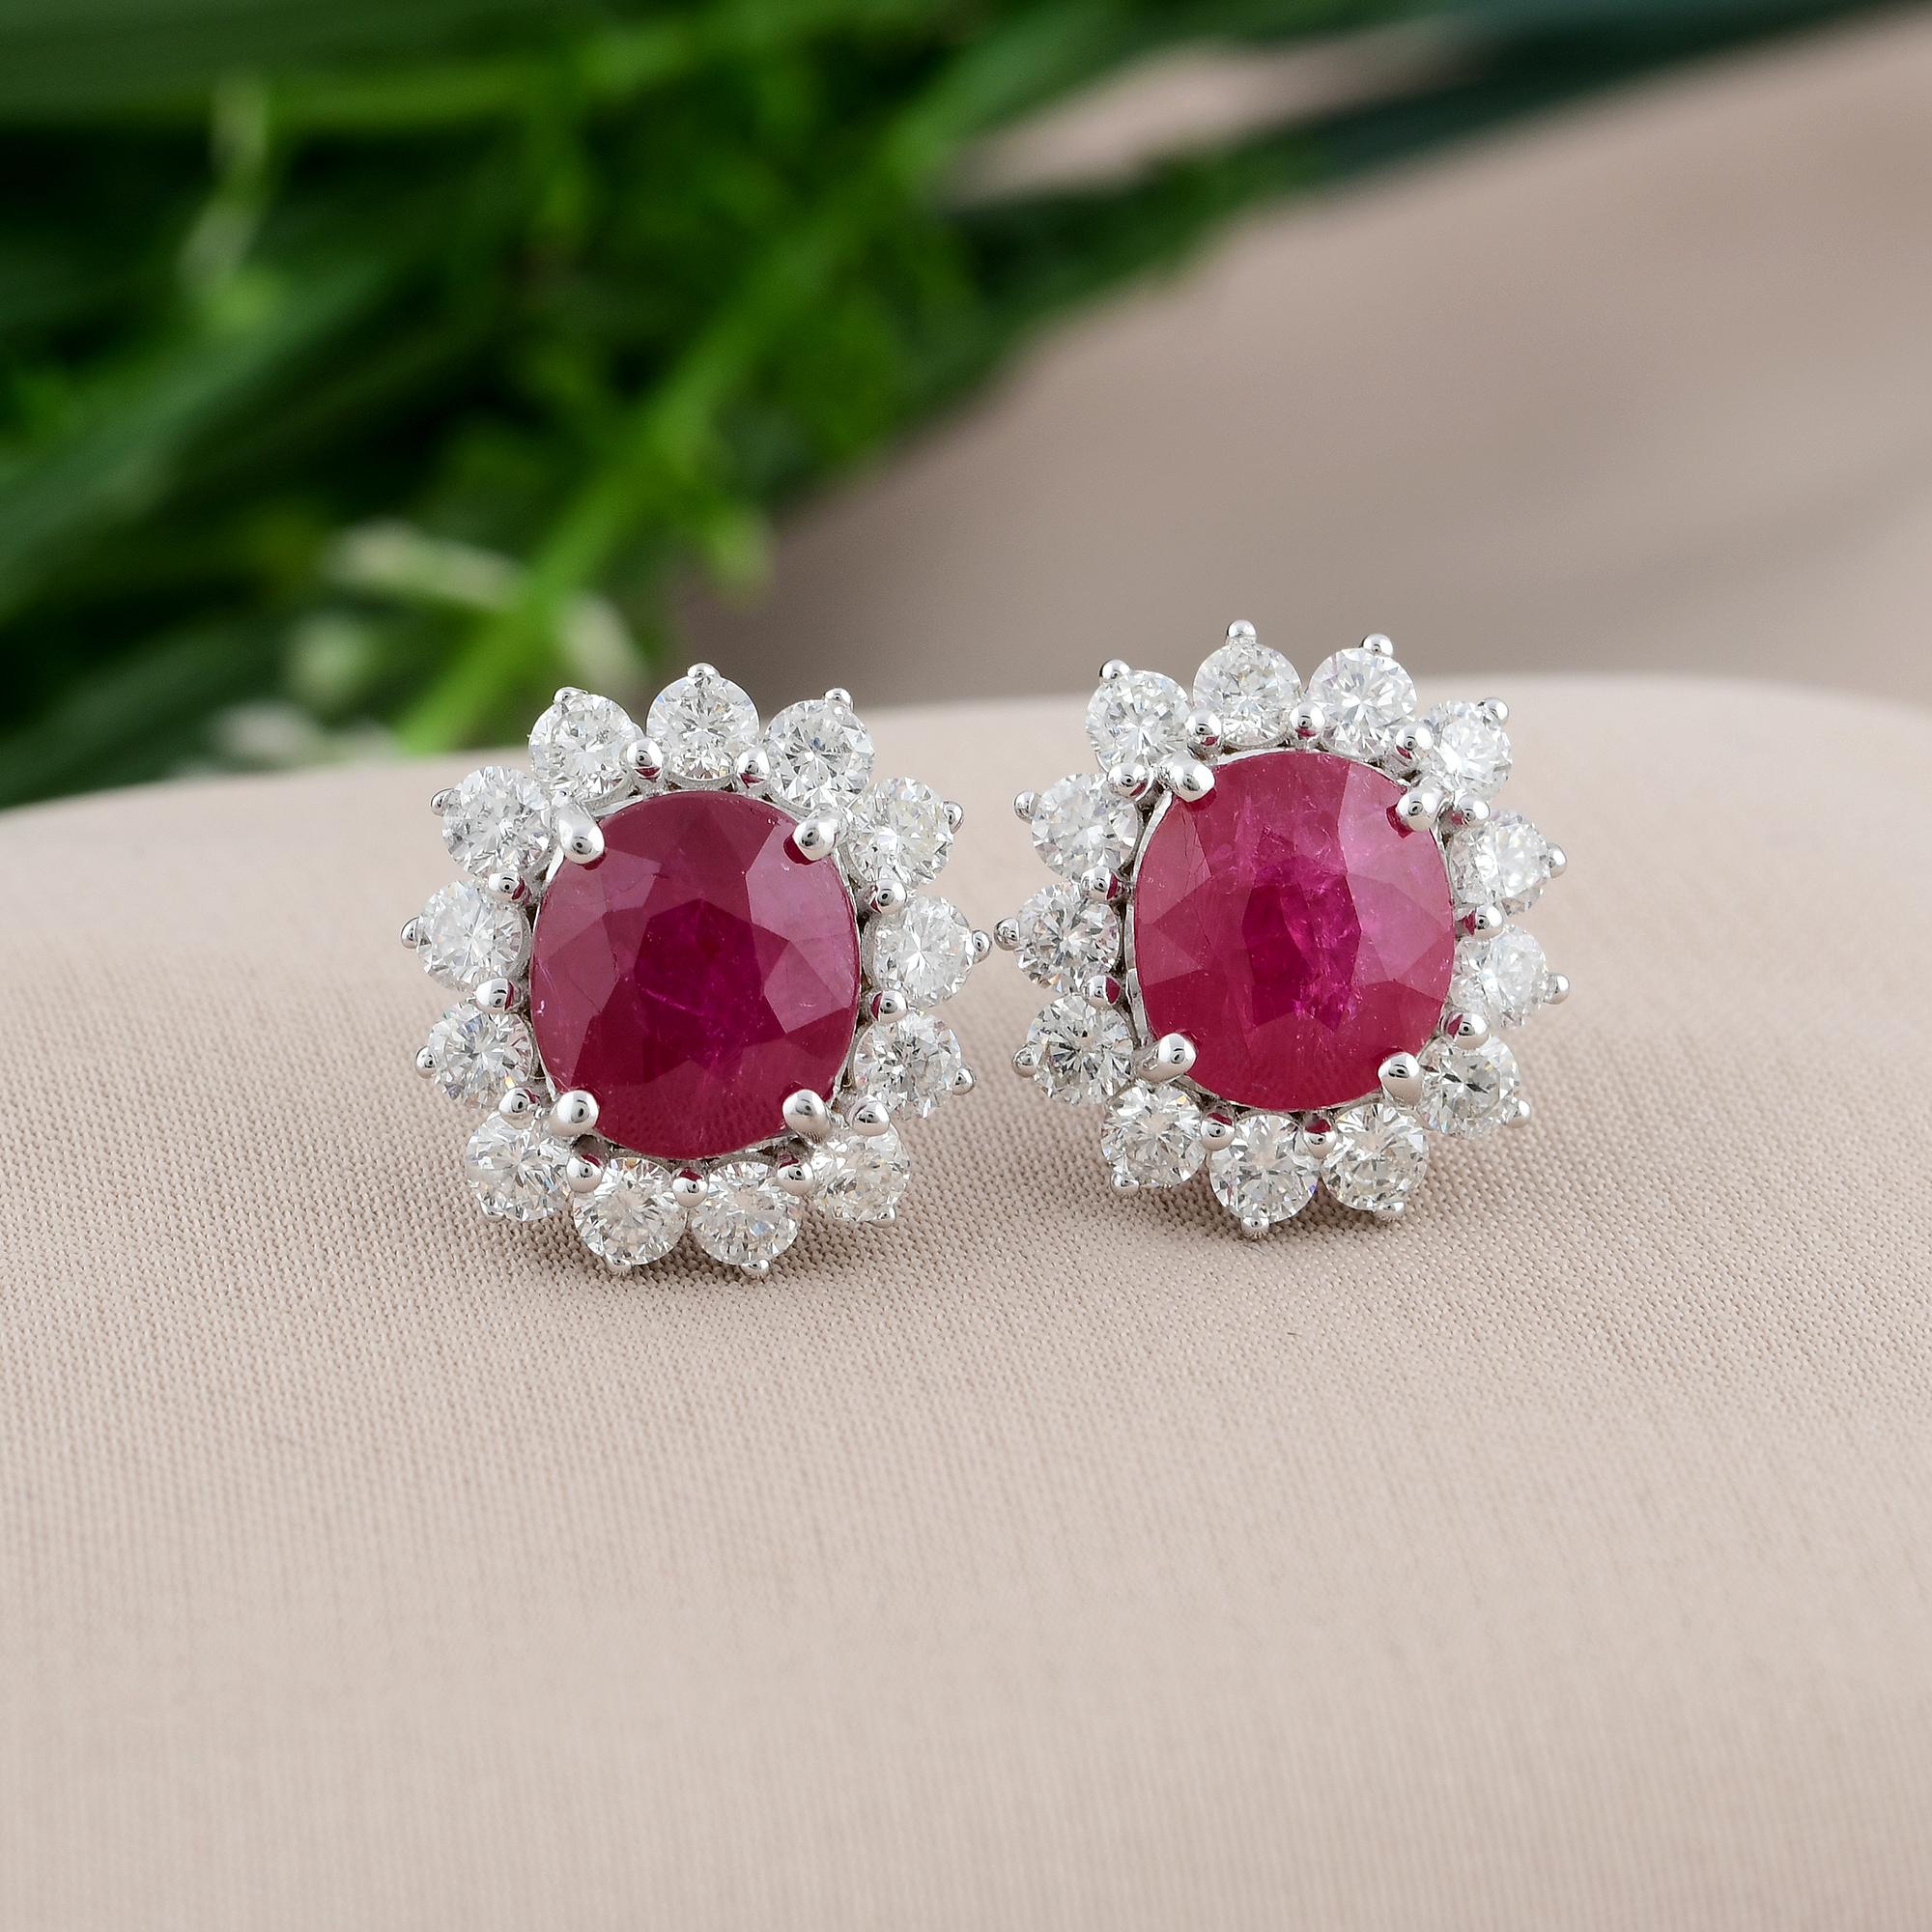 Oval Cut Ruby Gemstone Stud Earrings Diamond 18 Karat White Gold Handmade Fine Jewelry For Sale